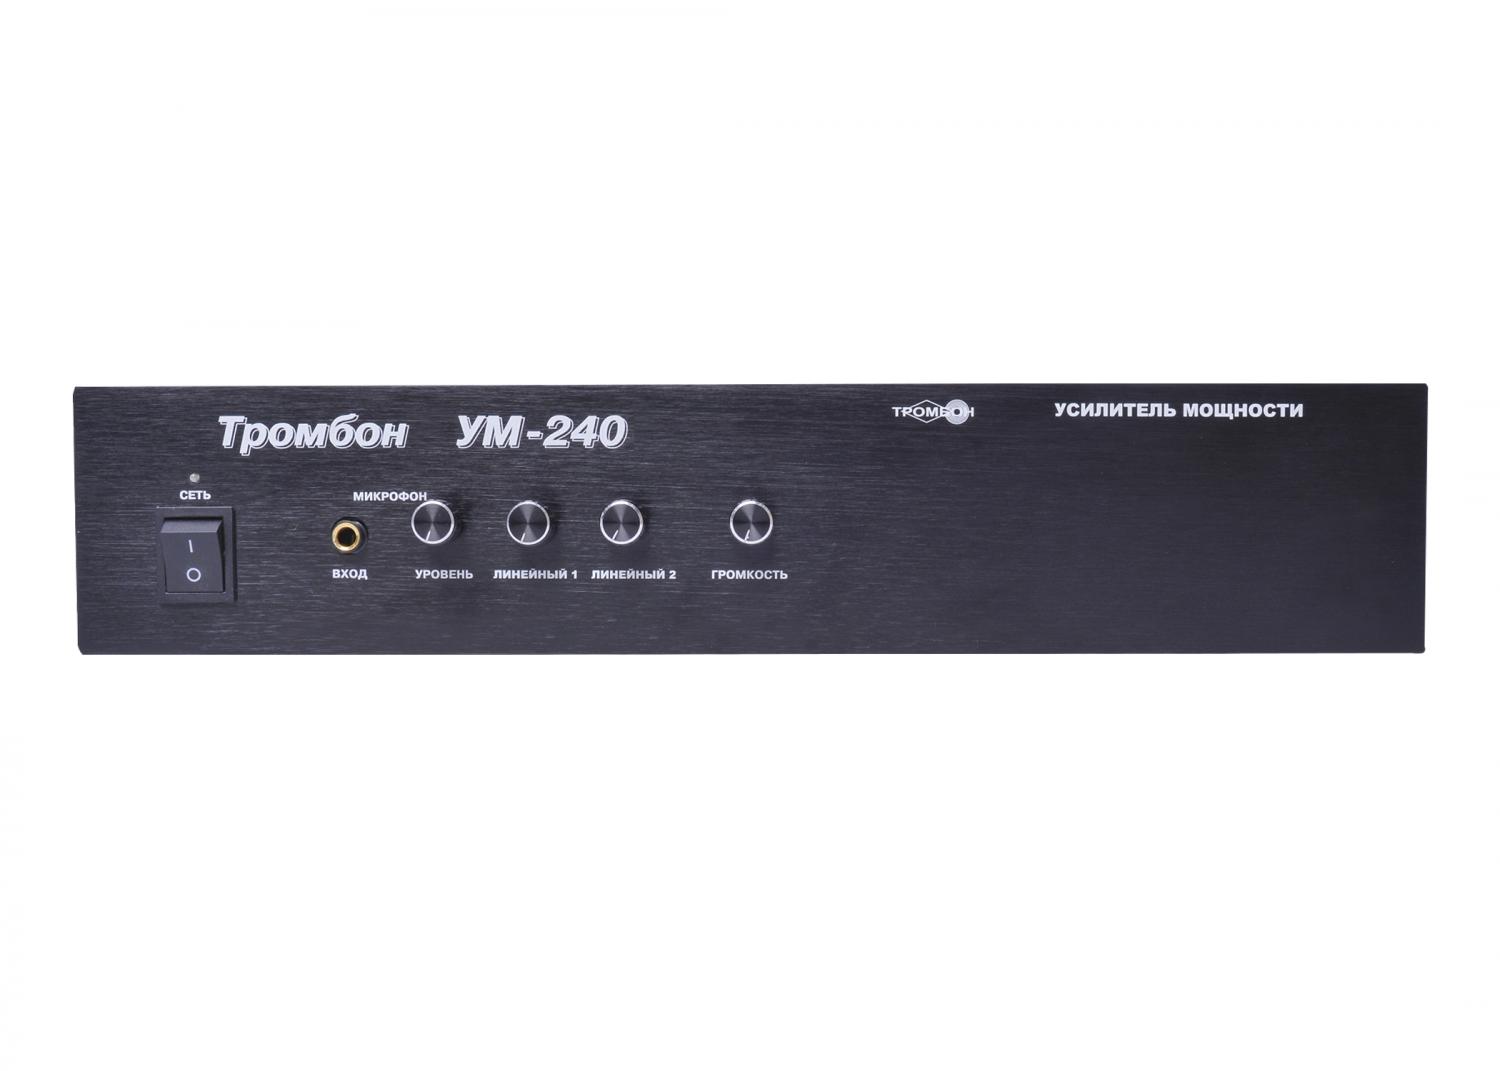 Все Тромбон УМ-240 видеонаблюдения в магазине Vidos Group